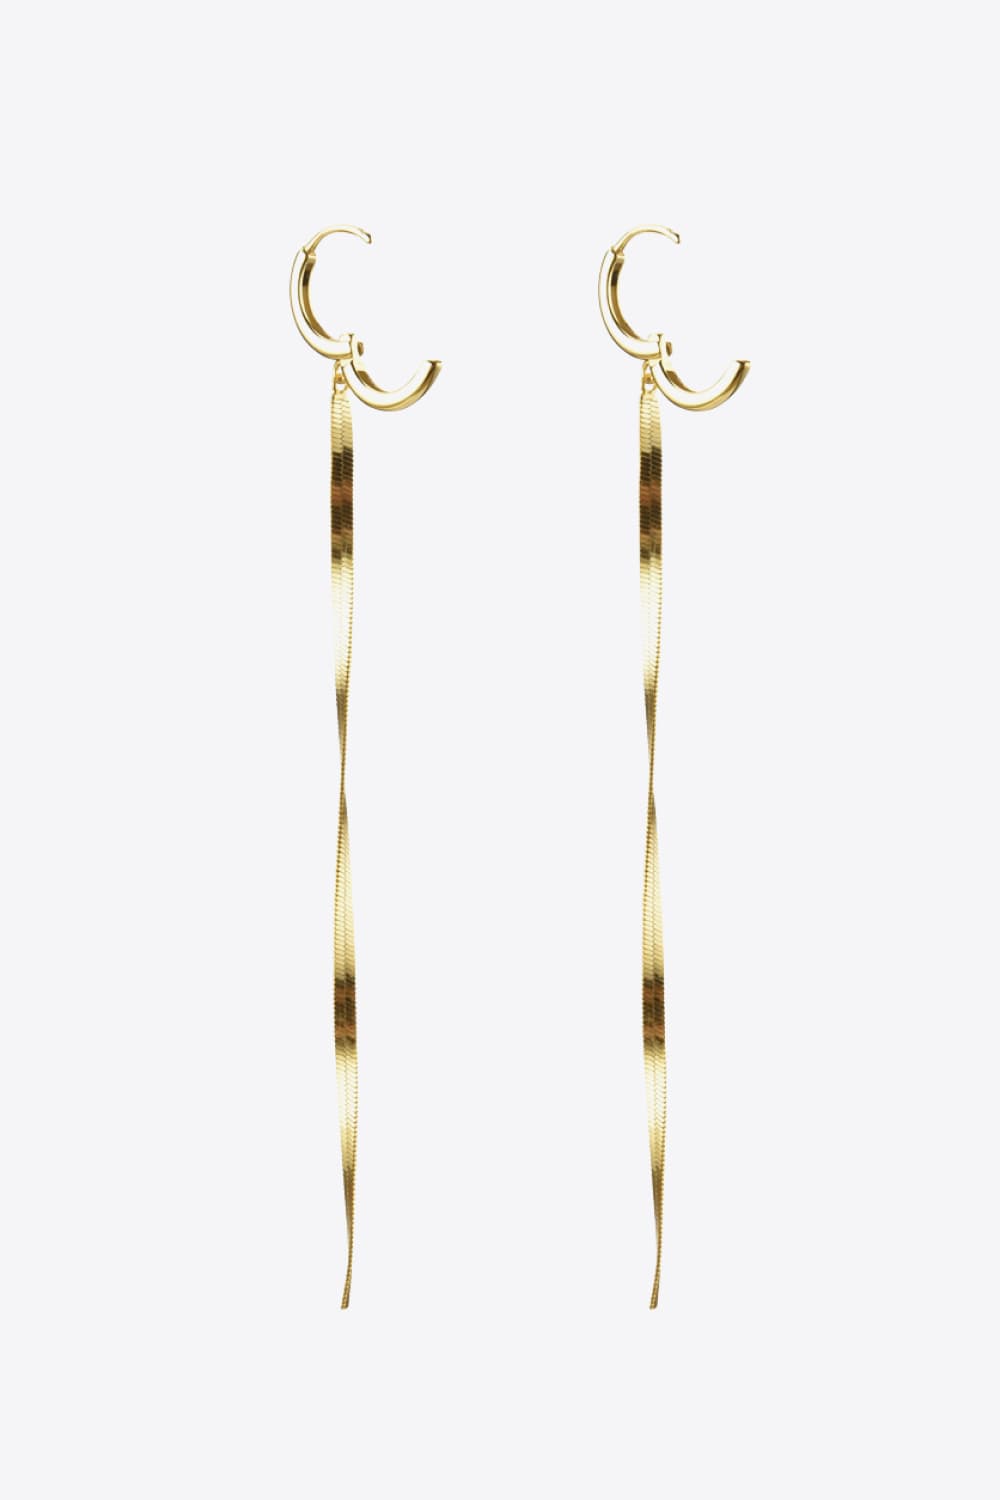 925 Sterling Silver Long Snake Chain Earrings - Kings Crown Jewel Boutique